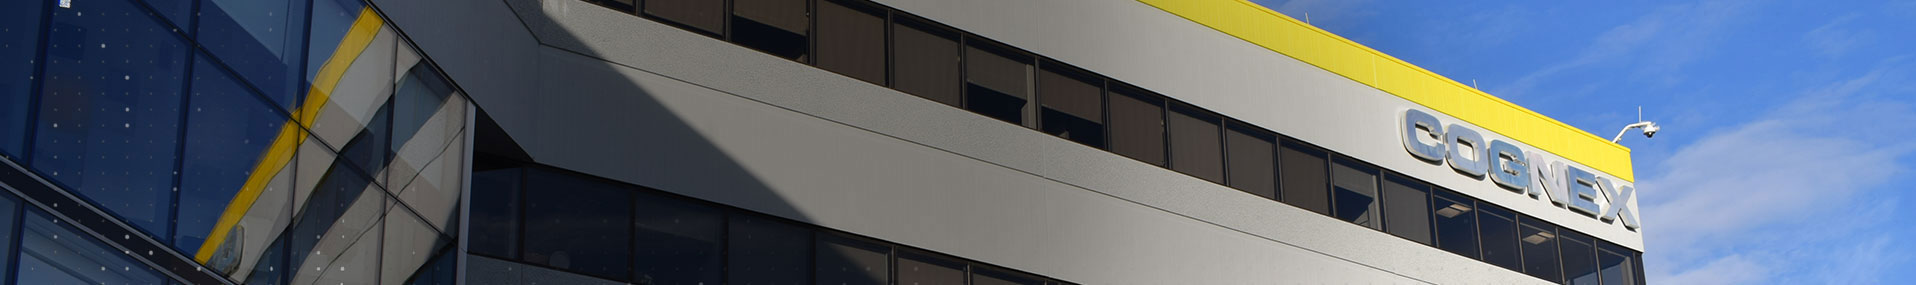 建筑物上的康耐视公司标志